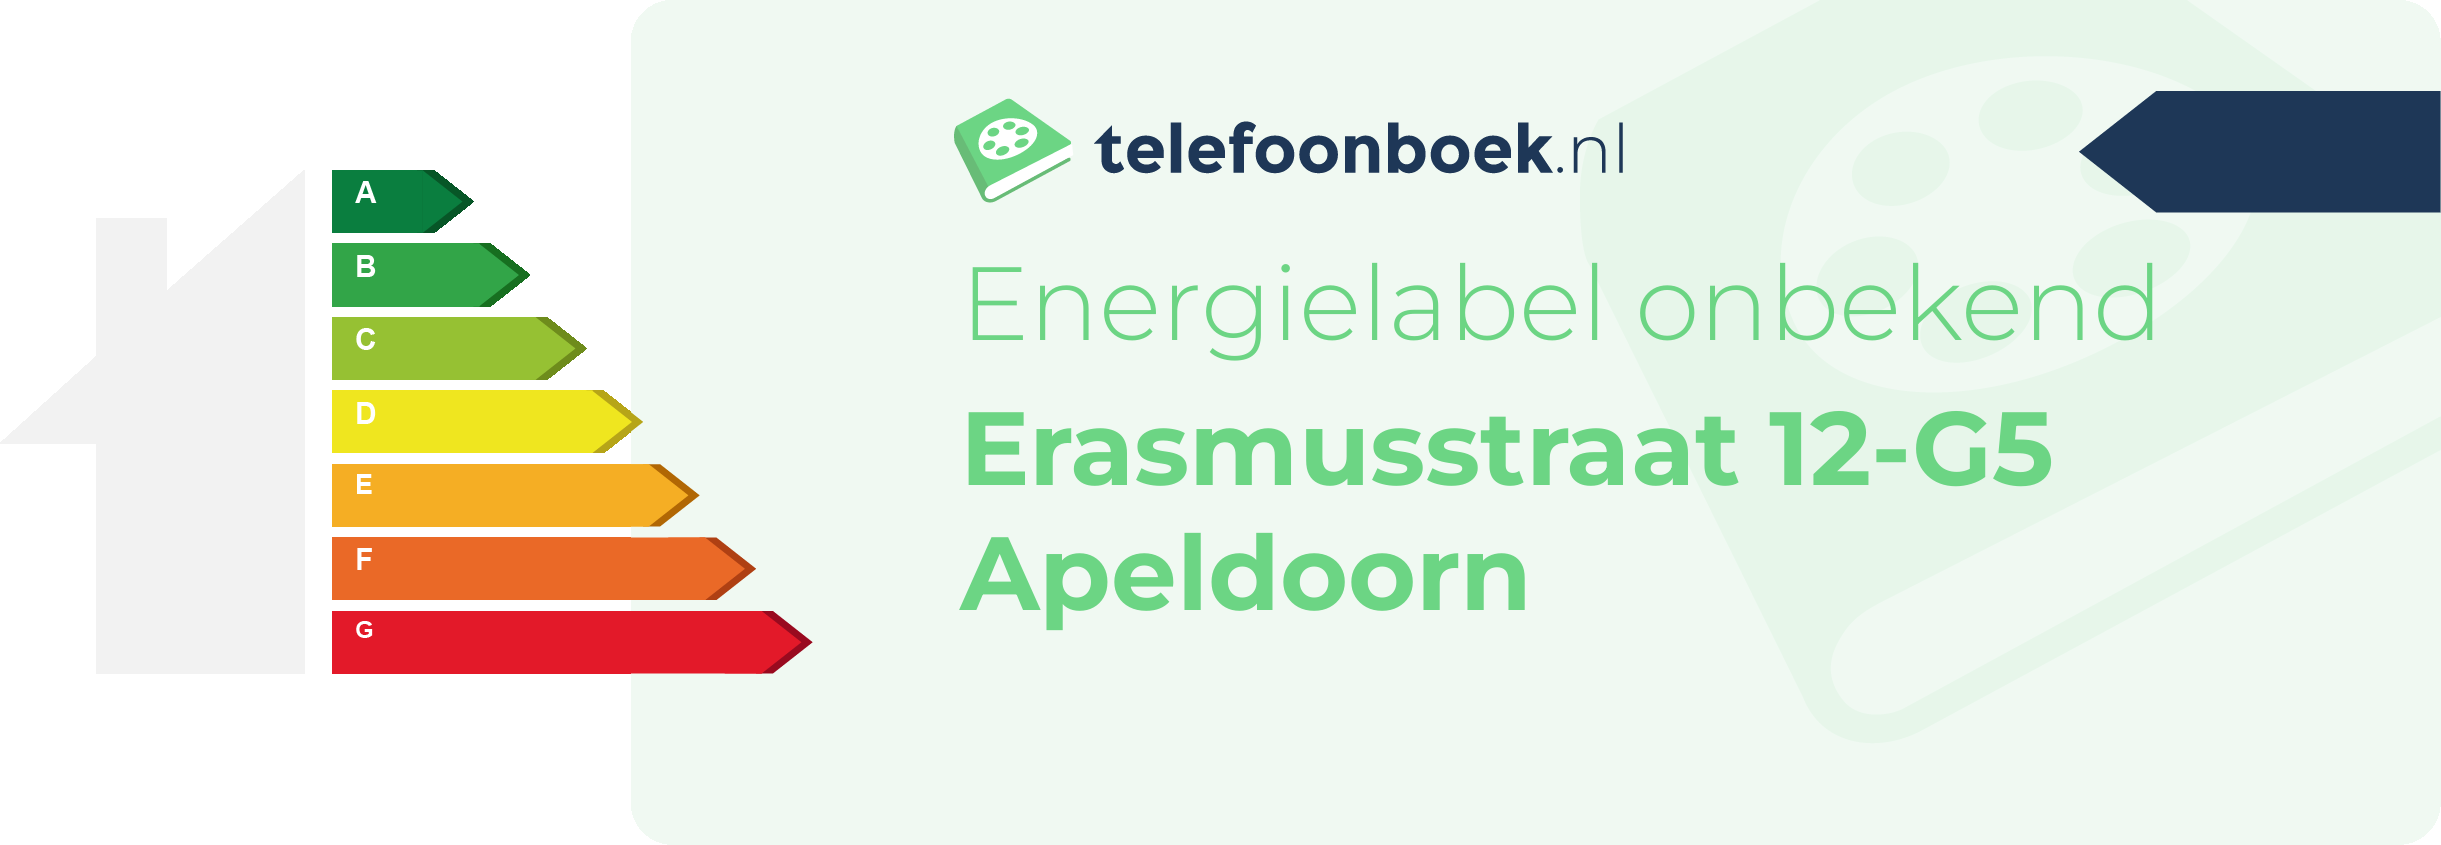 Energielabel Erasmusstraat 12-G5 Apeldoorn